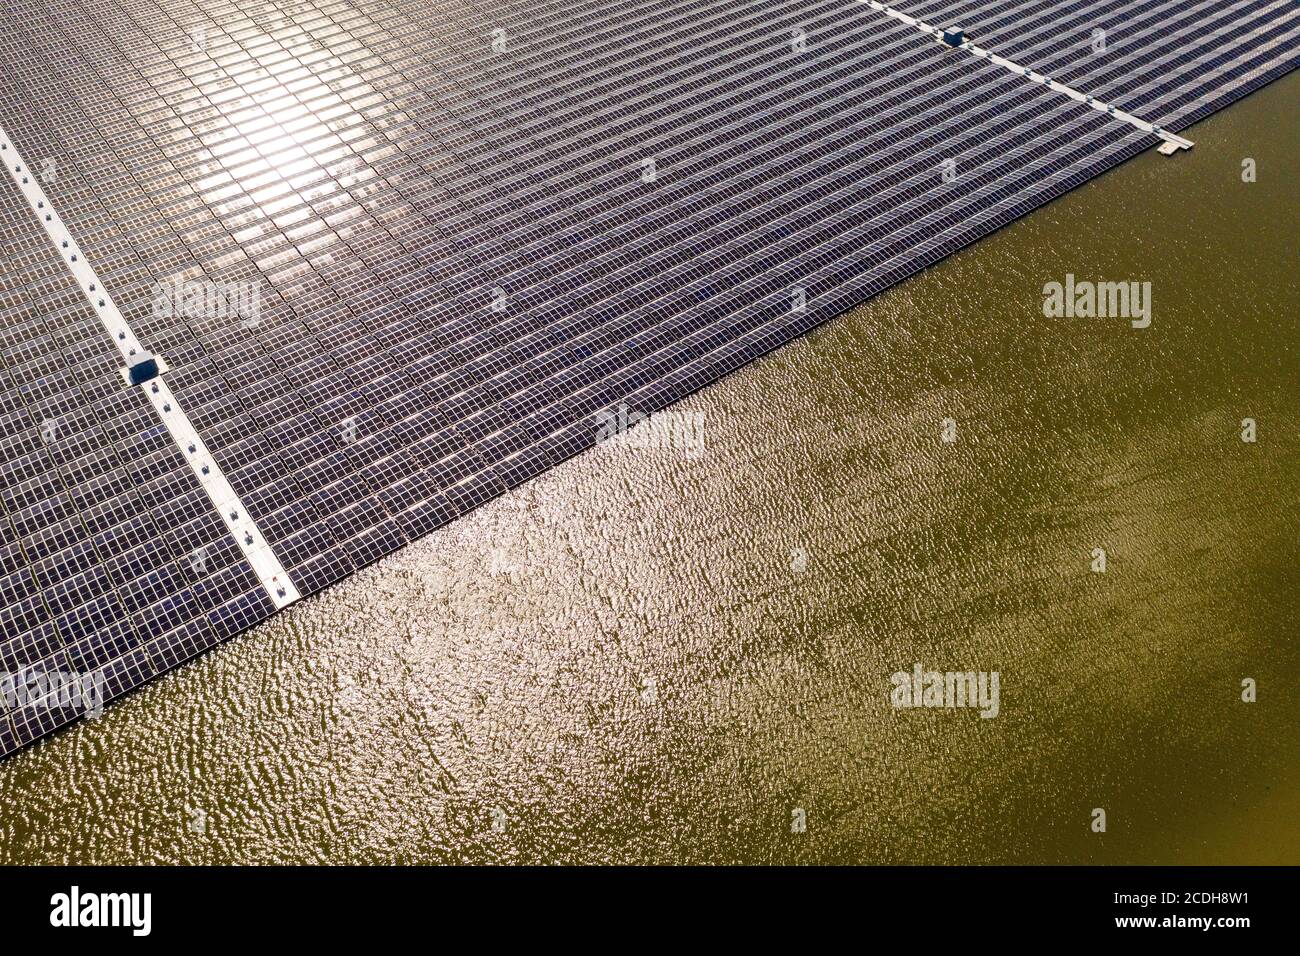 Floating Solar Panels Stock Photo